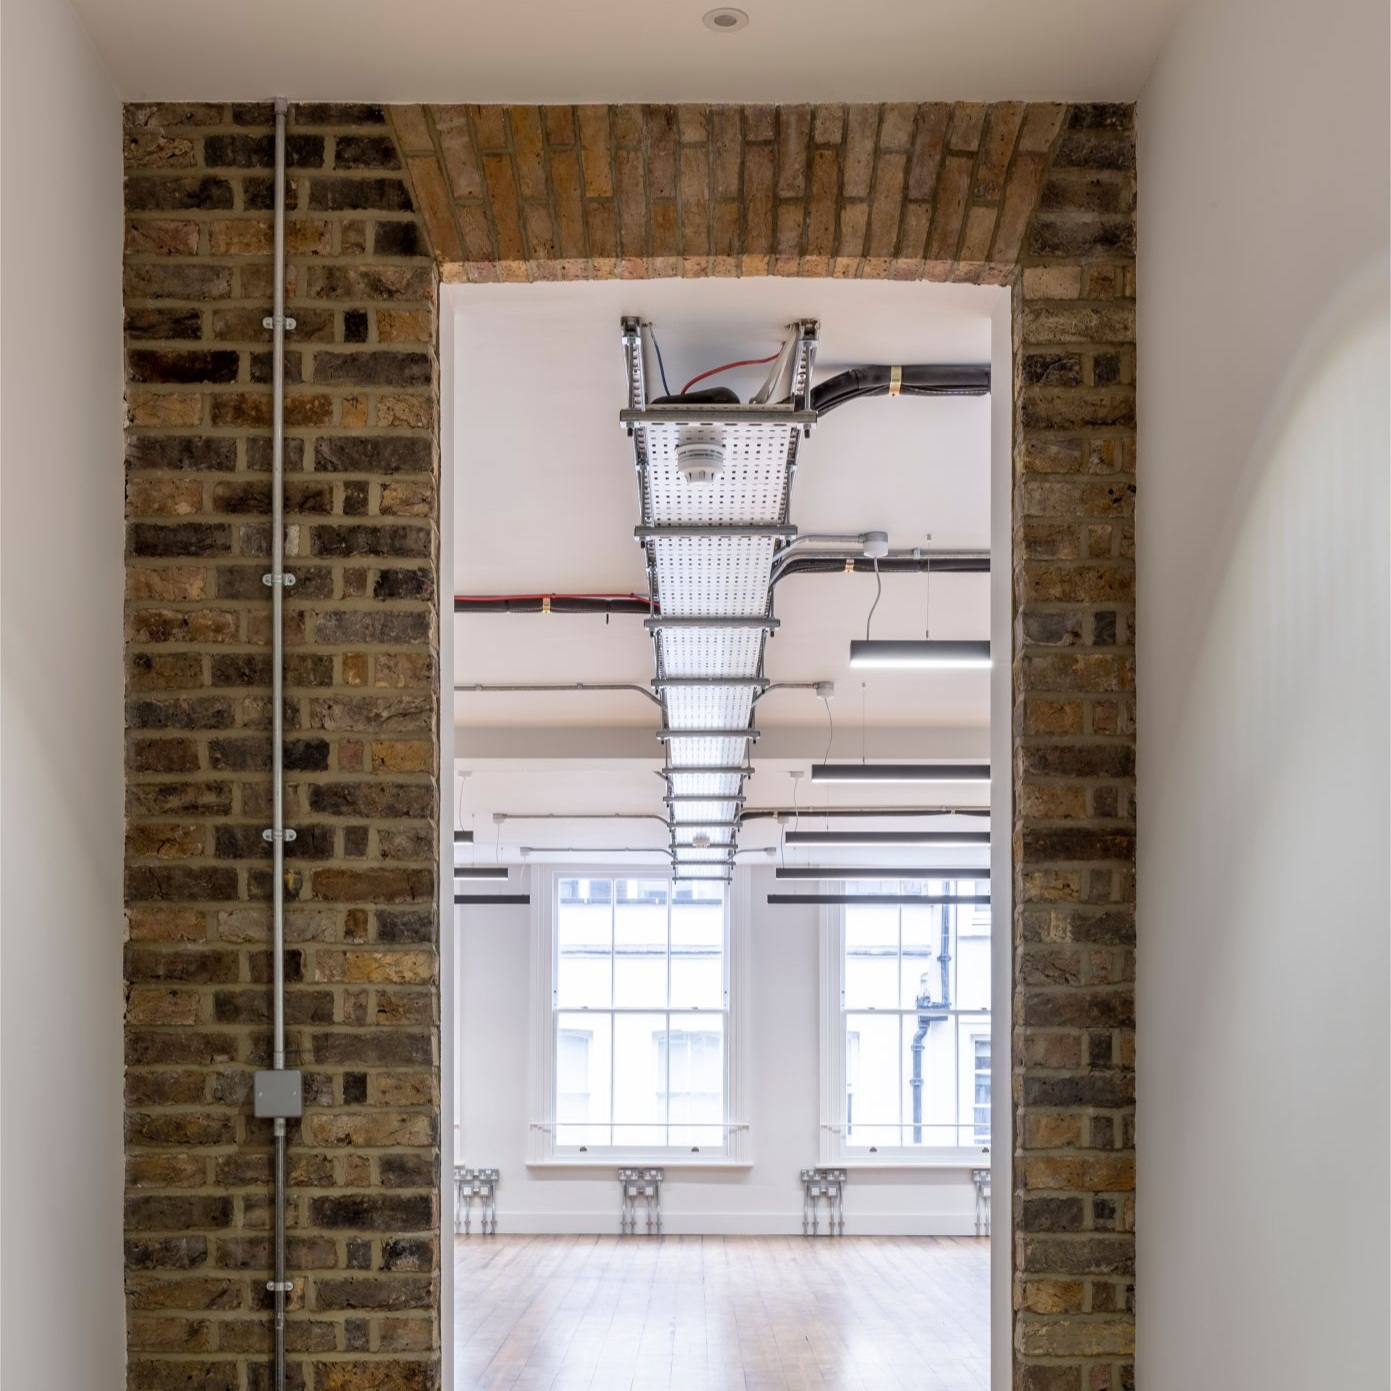 Suspended-office-lighting-through-brick-doorway